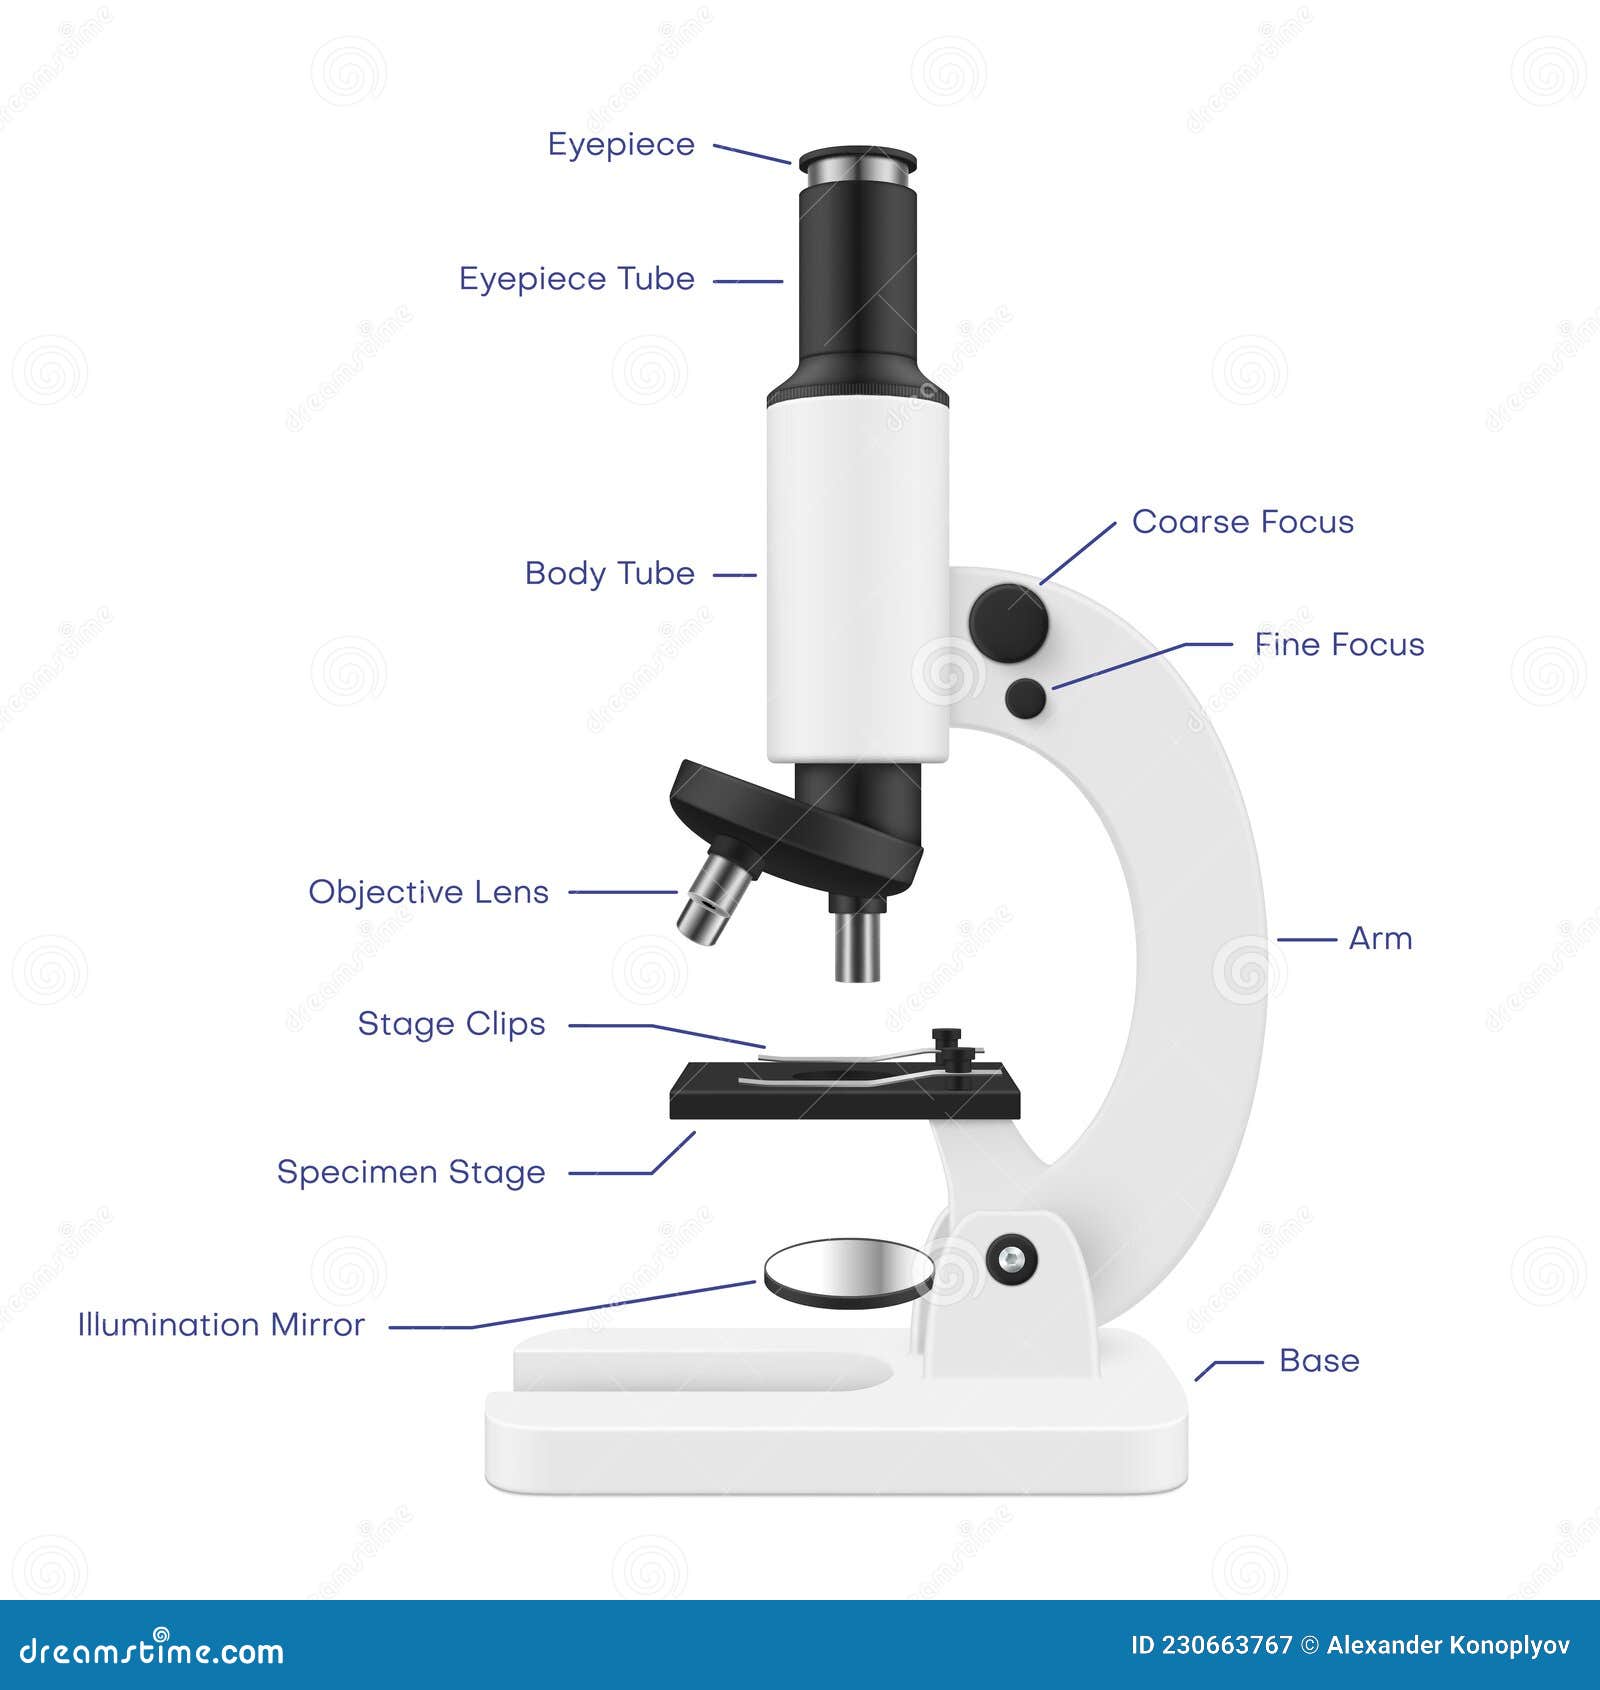 Как называются части цифрового микроскопа. Название частей цифрового микроскопа. Детали цифрового микроскопа. Части электронного микроскопа. Детали микроскопа с названиями.